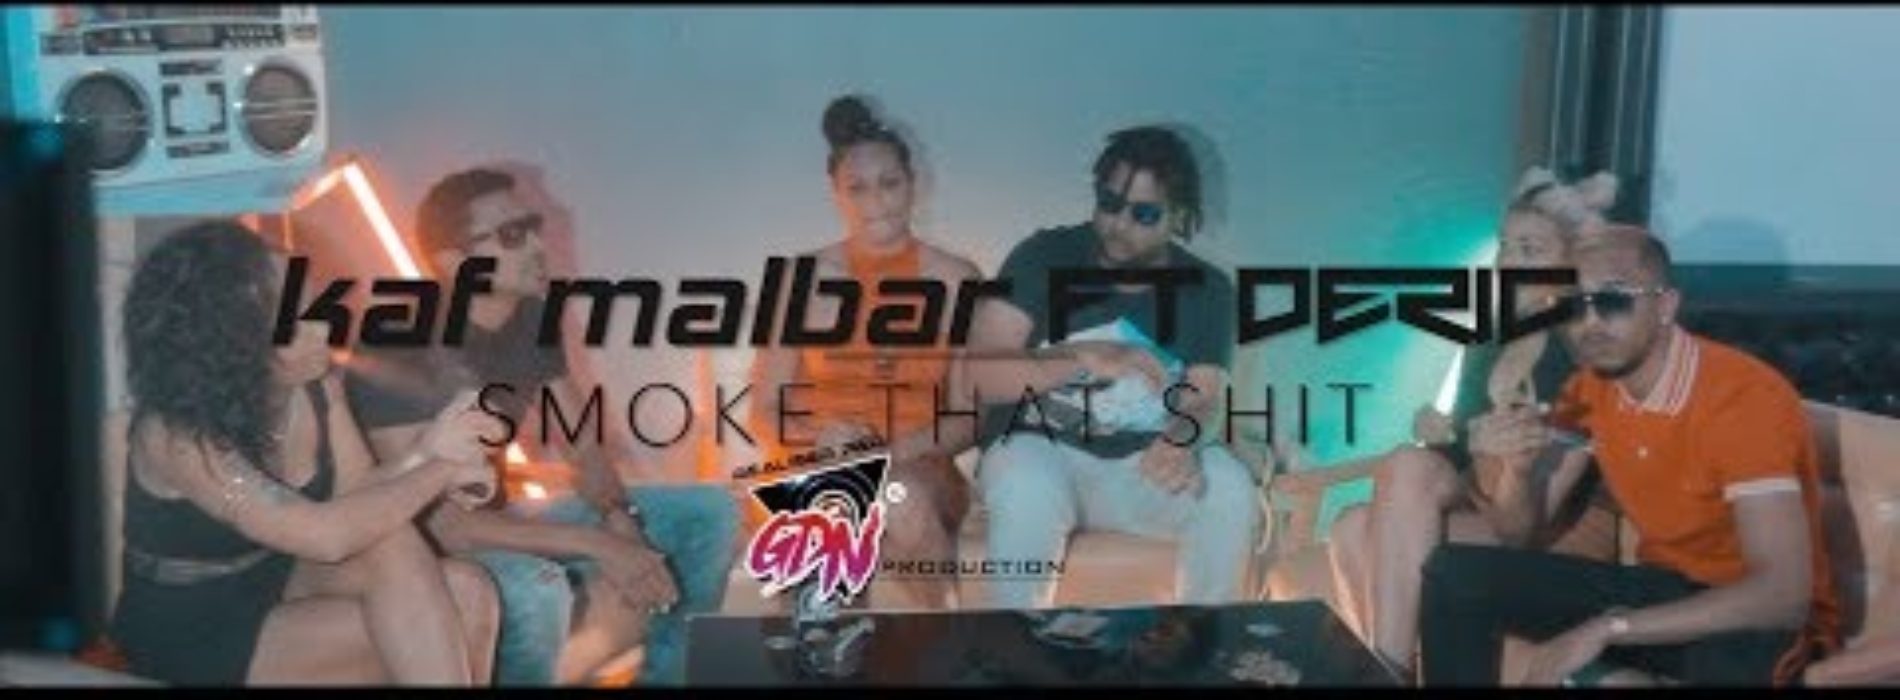 Déric ft. Kaf Malbar – Smoke That Shit (Clip Officiel) – Novembre 2018